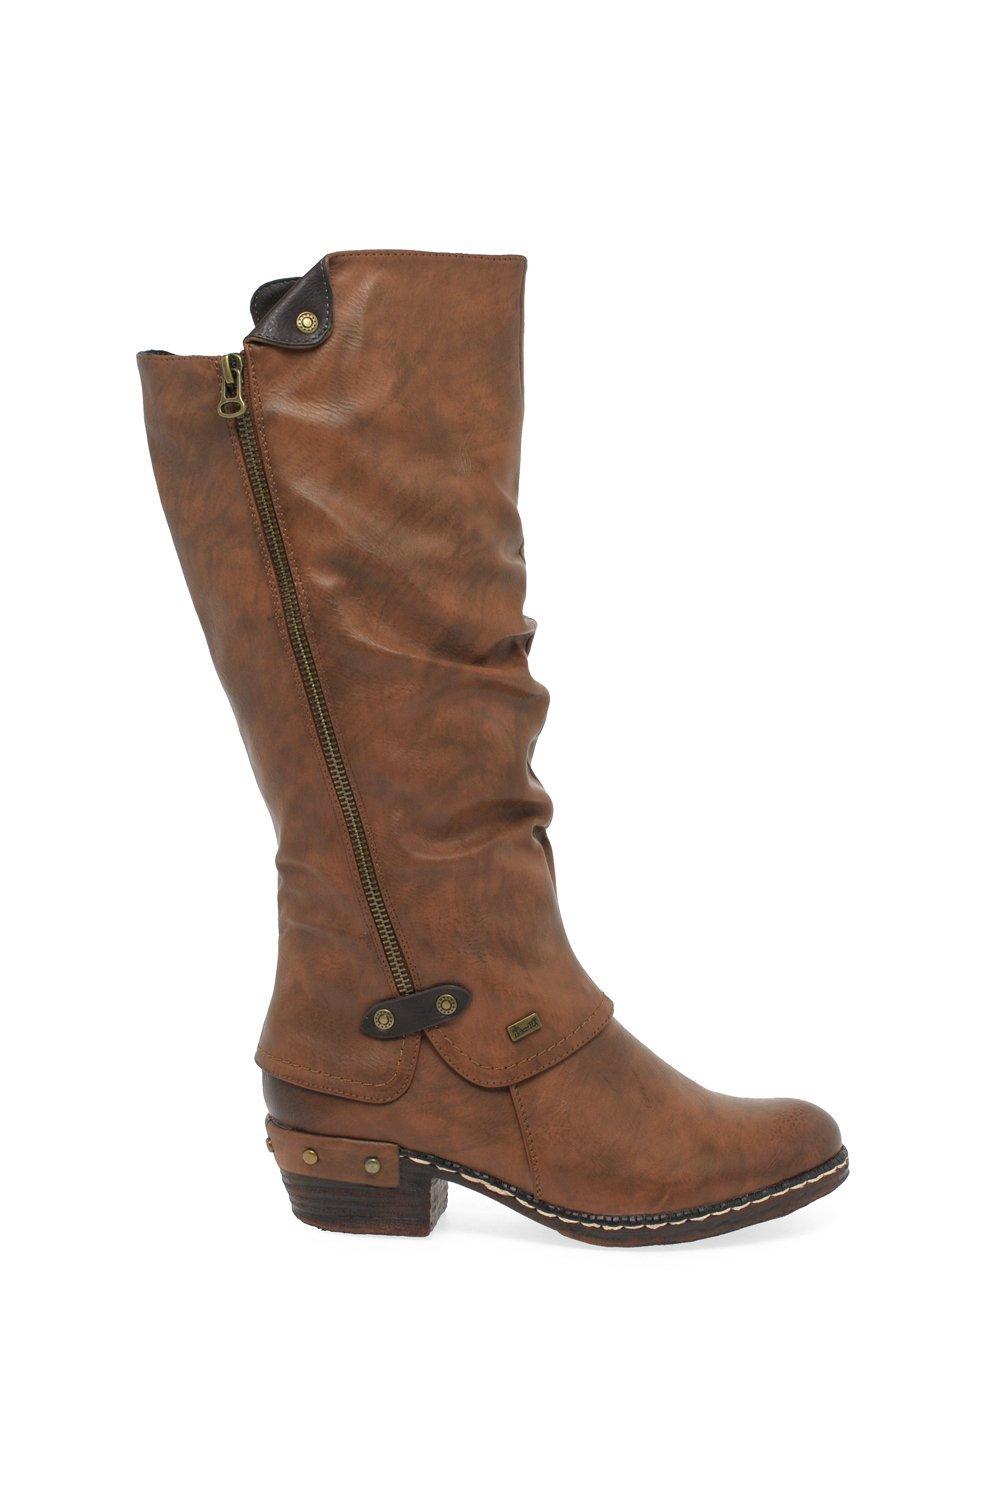 Rieker Women's 'Sierra' Long Boots|Size: 3.5|tan